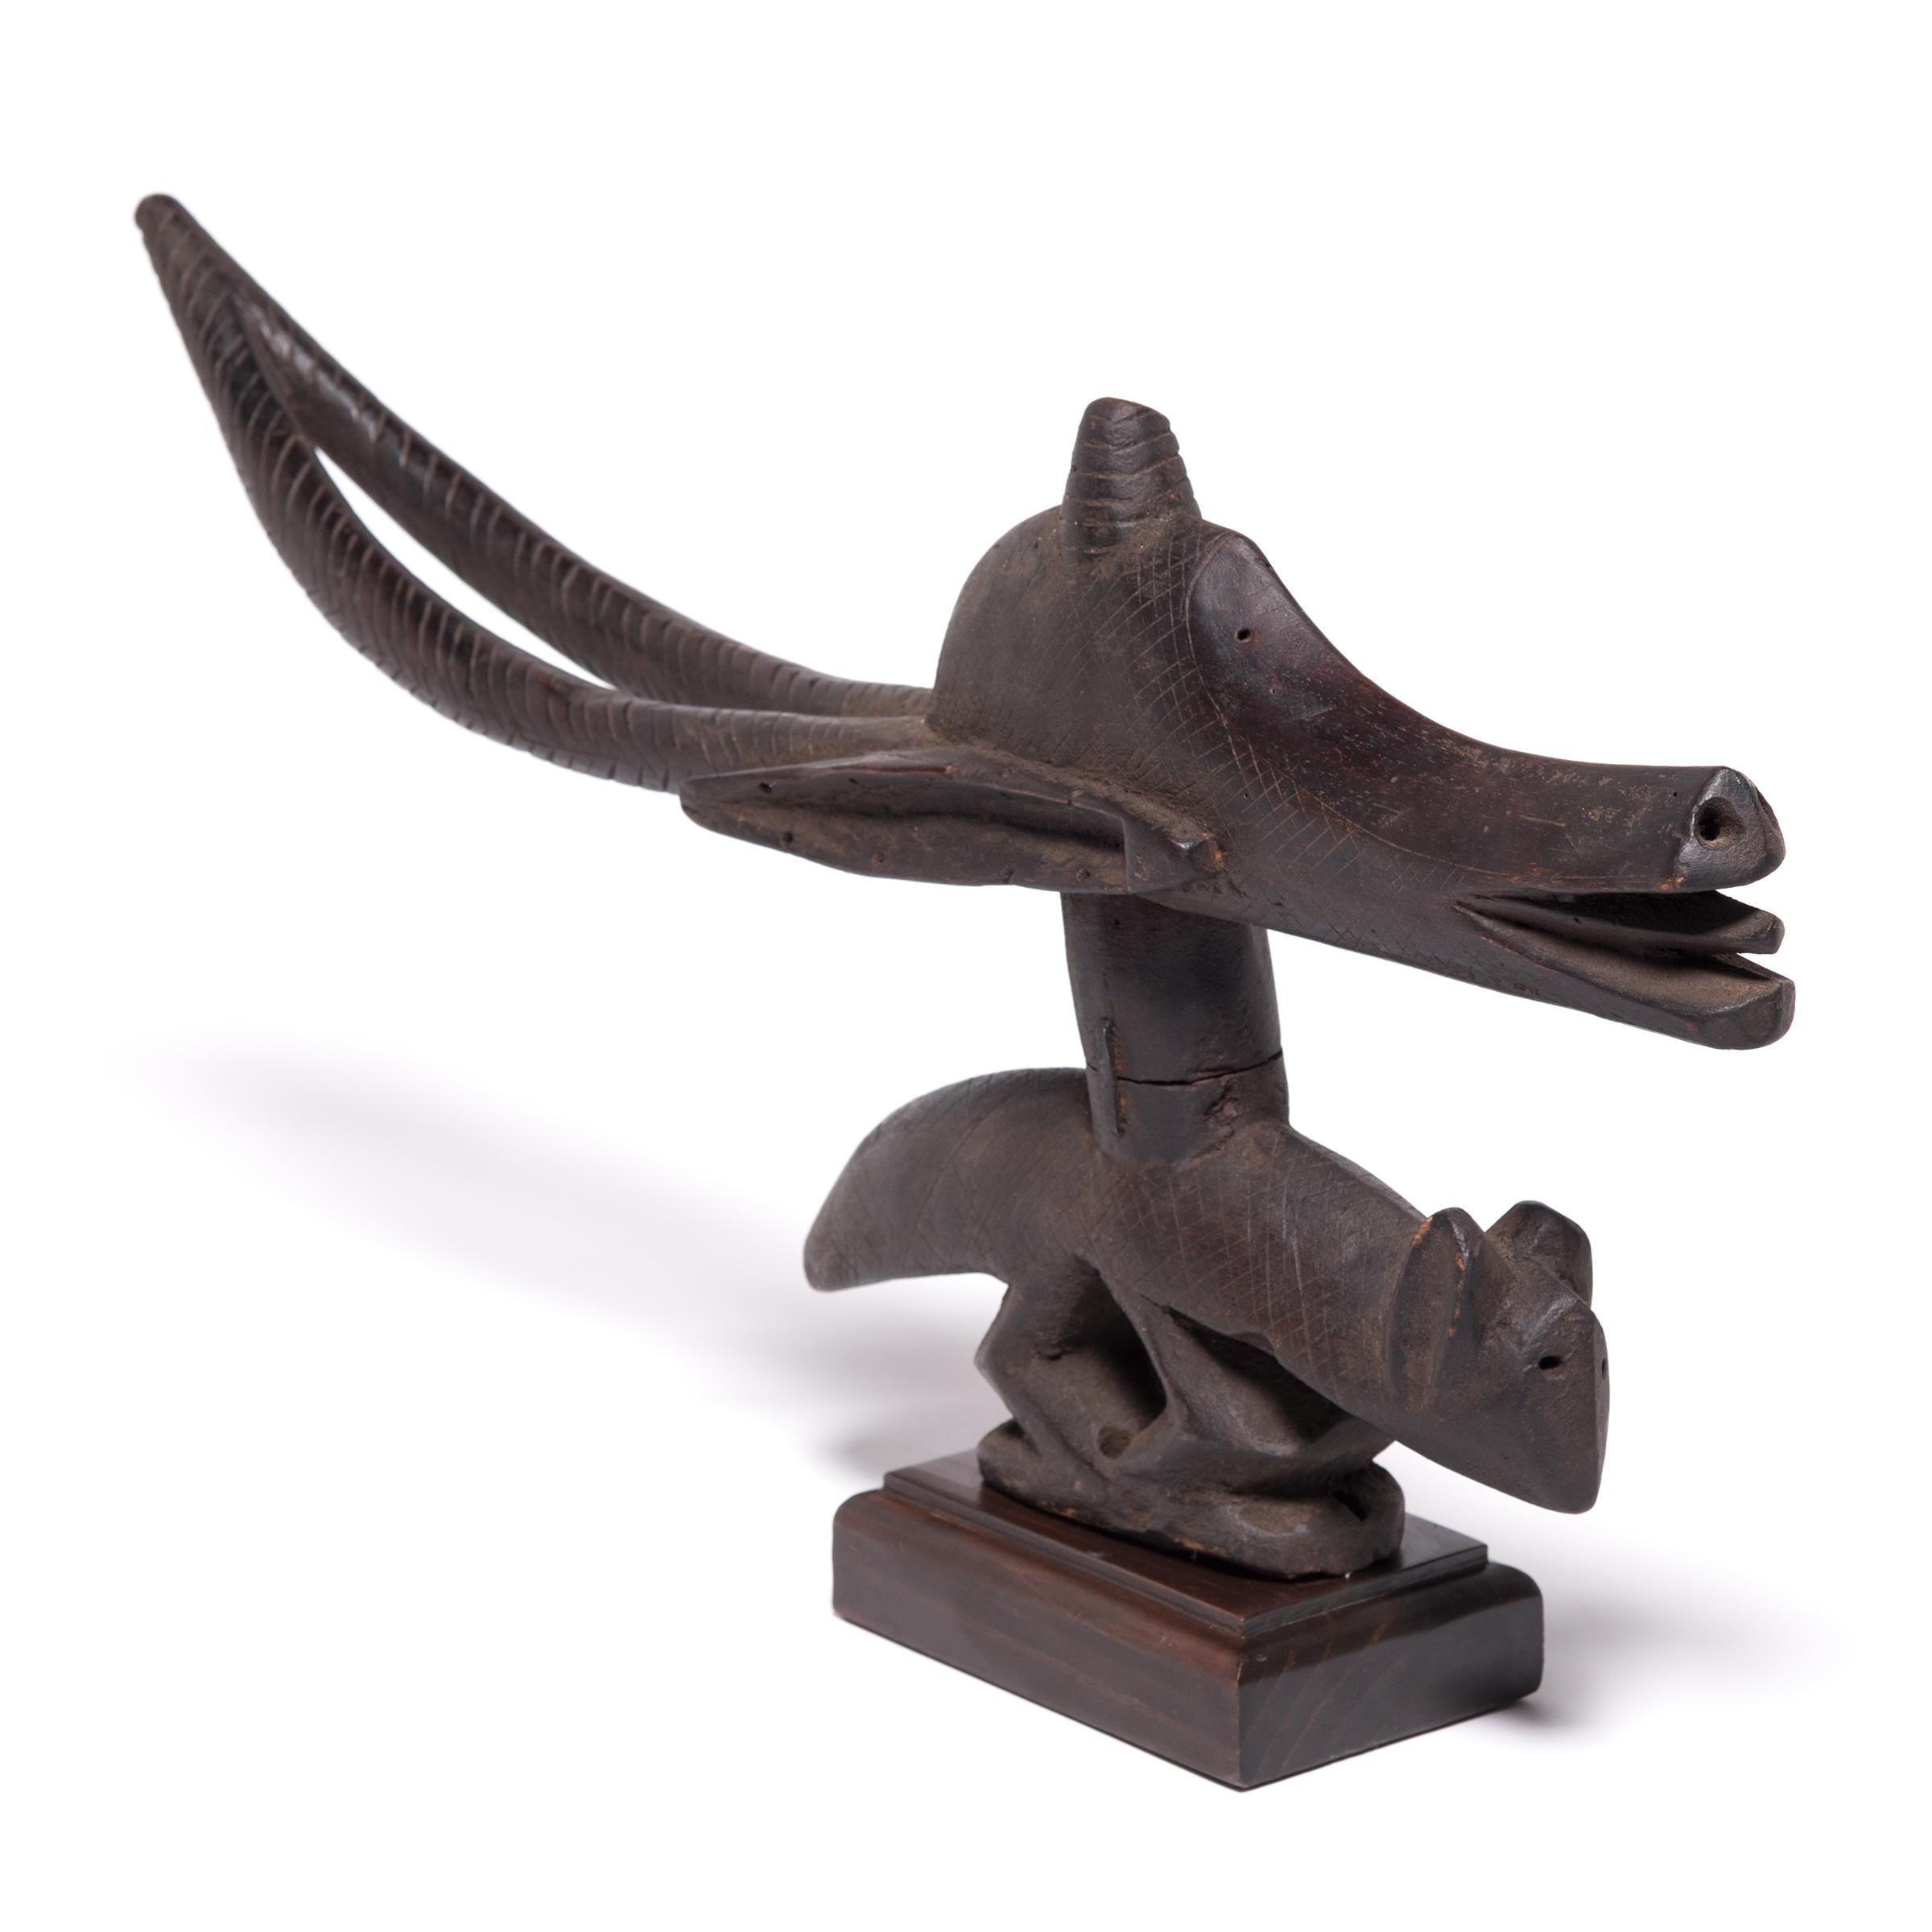 Dieser hölzerne Kopfschmuck wurde zu Ehren des mythischen Wesens Ci Wara geschnitzt, einer Bambara-Gottheit, die halb Mensch und halb Tier ist. Er kombiniert den anmutigen Kopf und die Hörner einer Antilope mit dem kompakten Körper eines